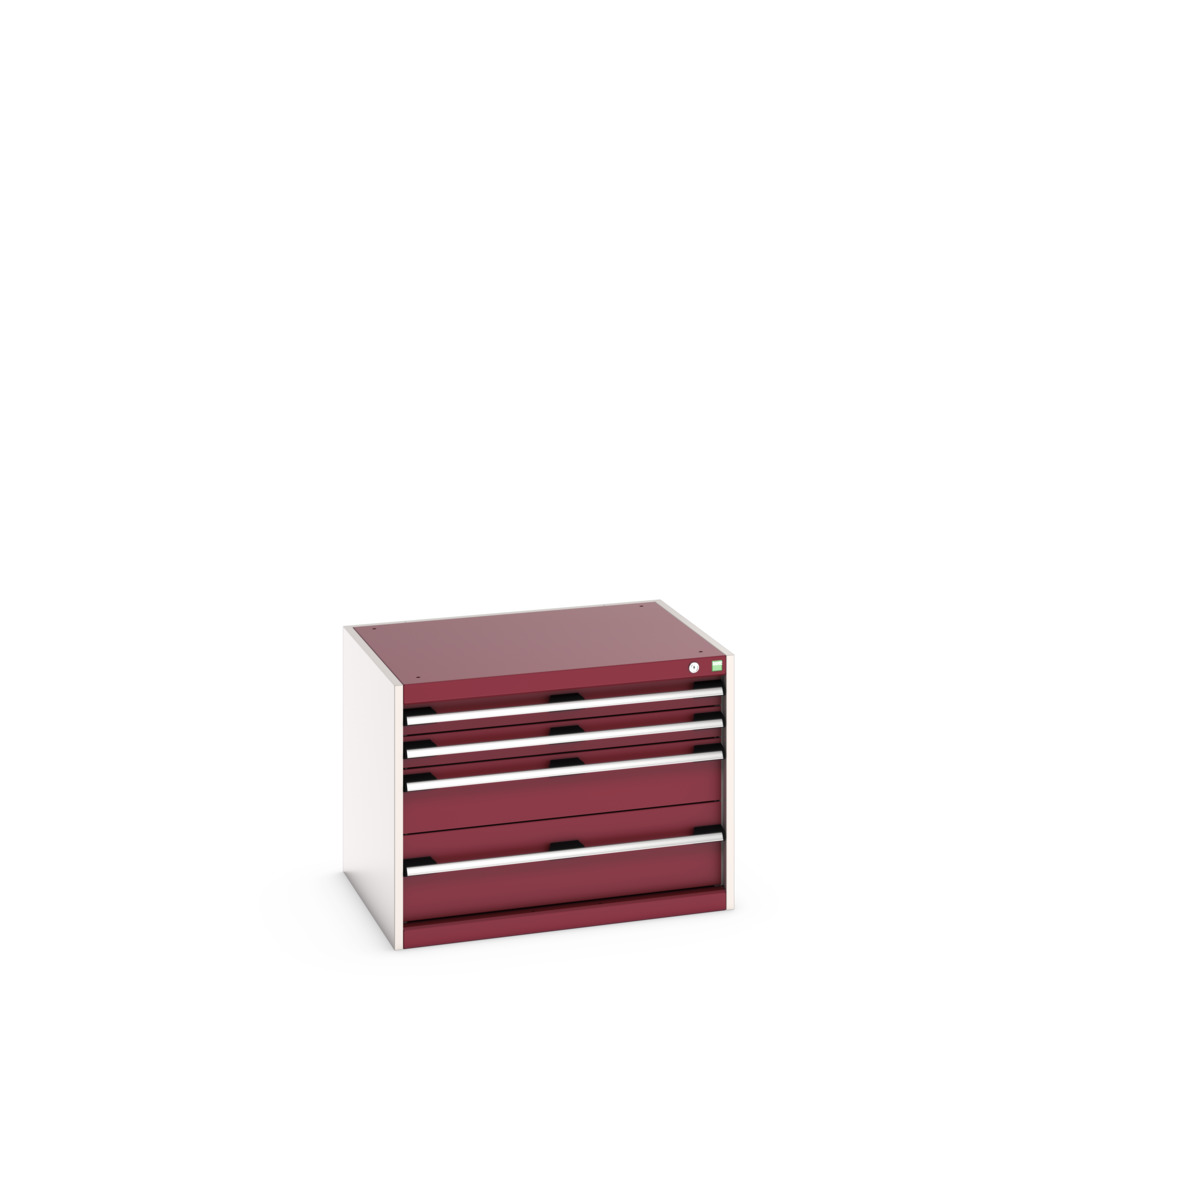 40020005.24V - cubio drawer cabinet